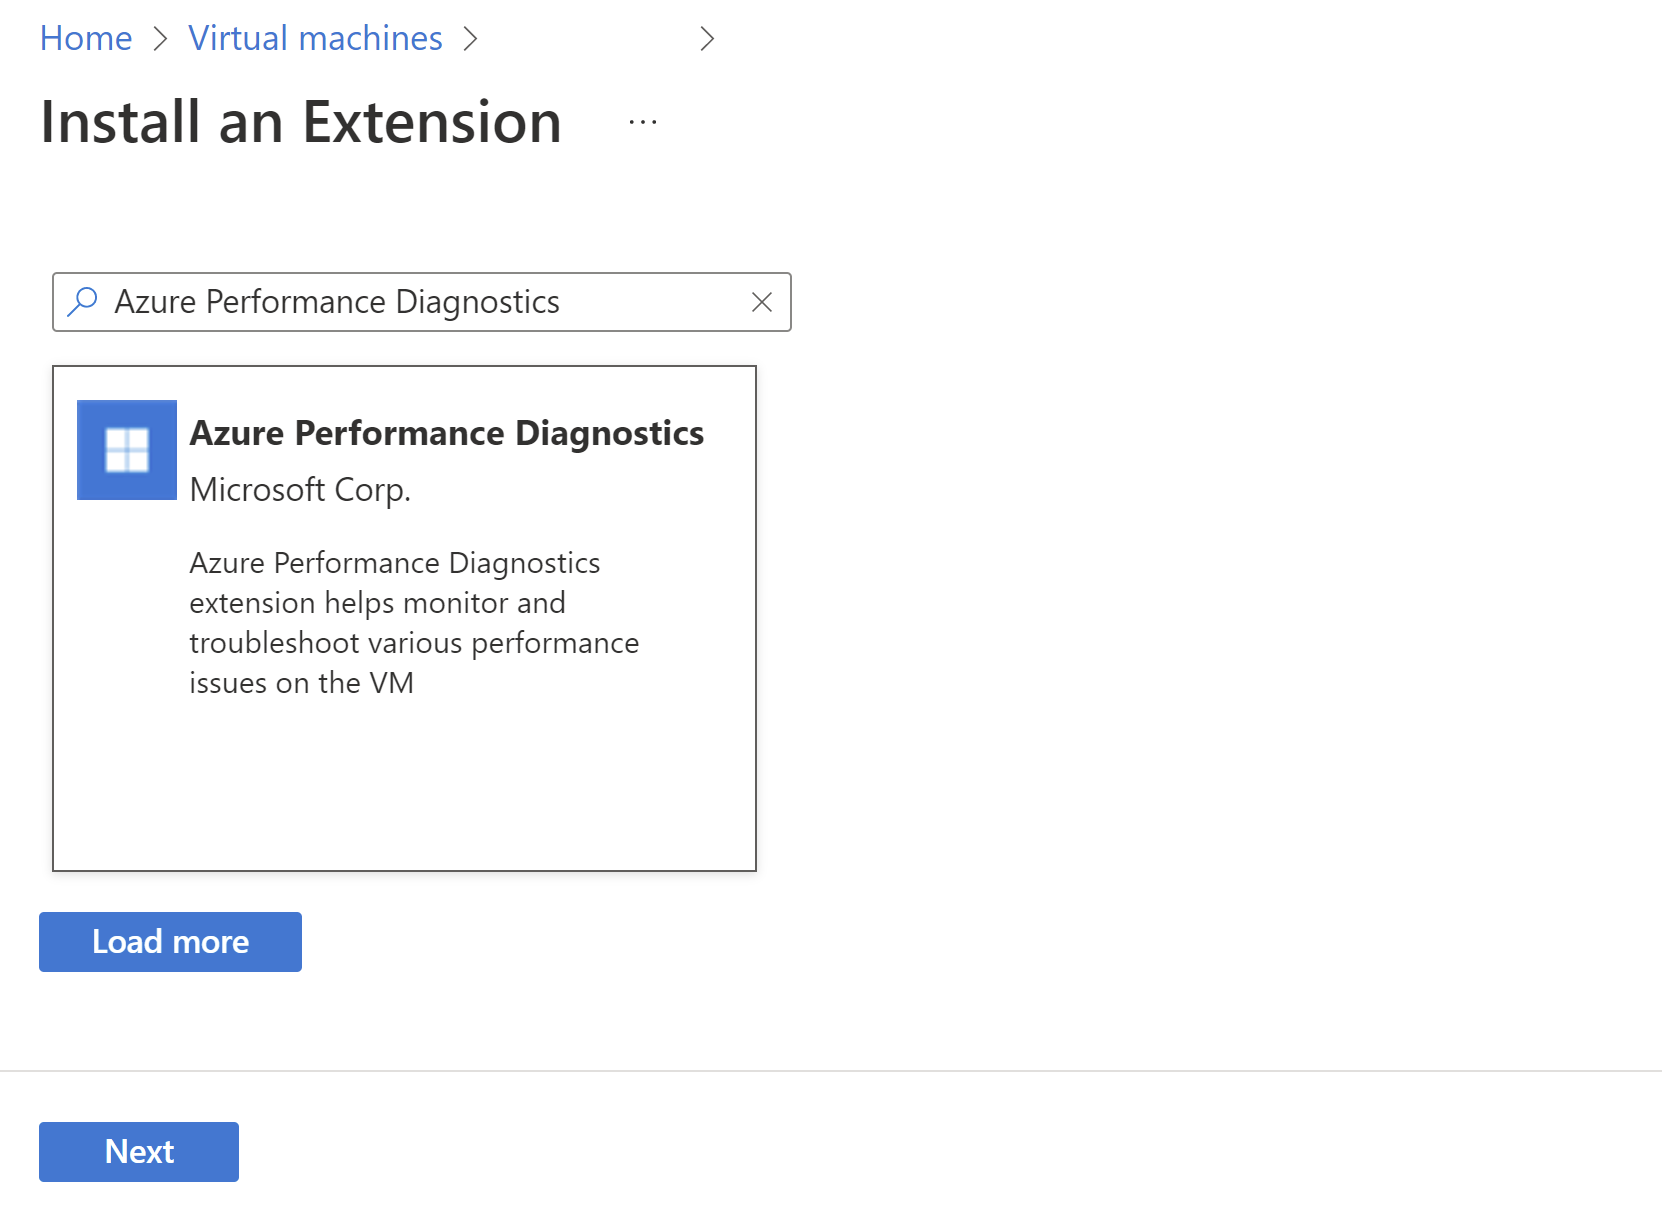 Capture de l’écran Nouvelle ressource, avec Azure Performance Diagnostics en surbrillance.